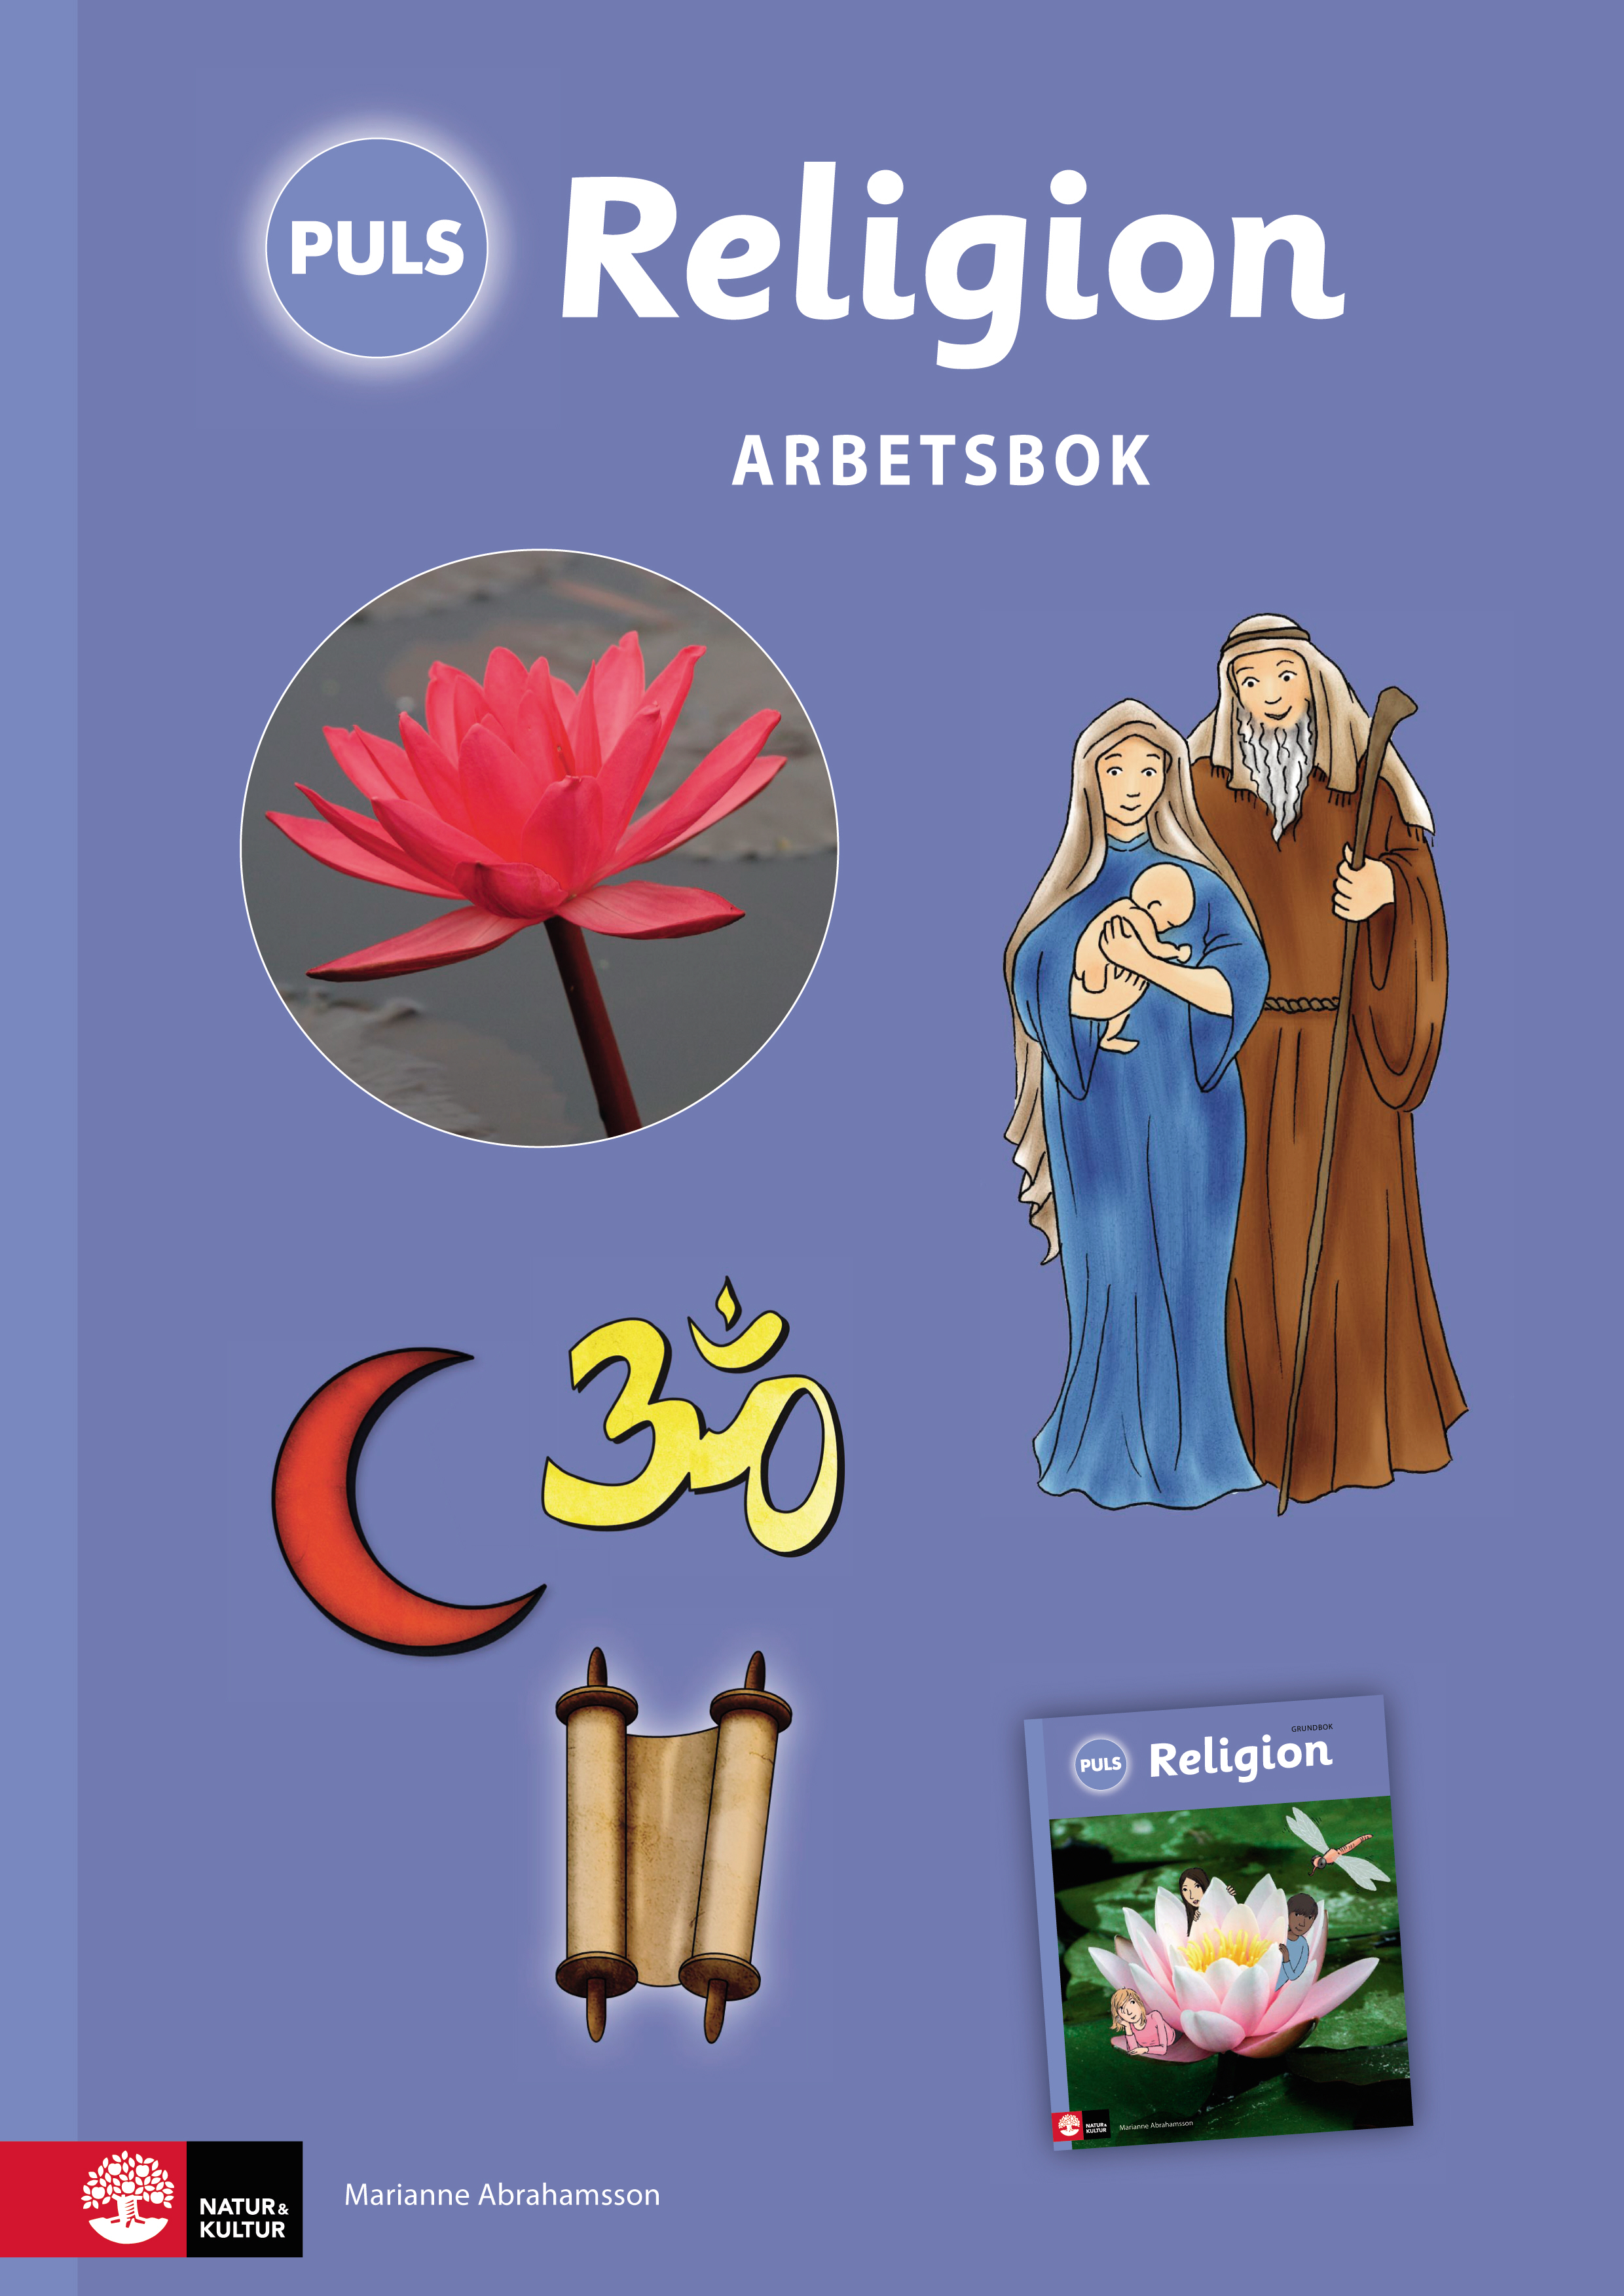 PULS Religion 4–6 Arbetsbok.